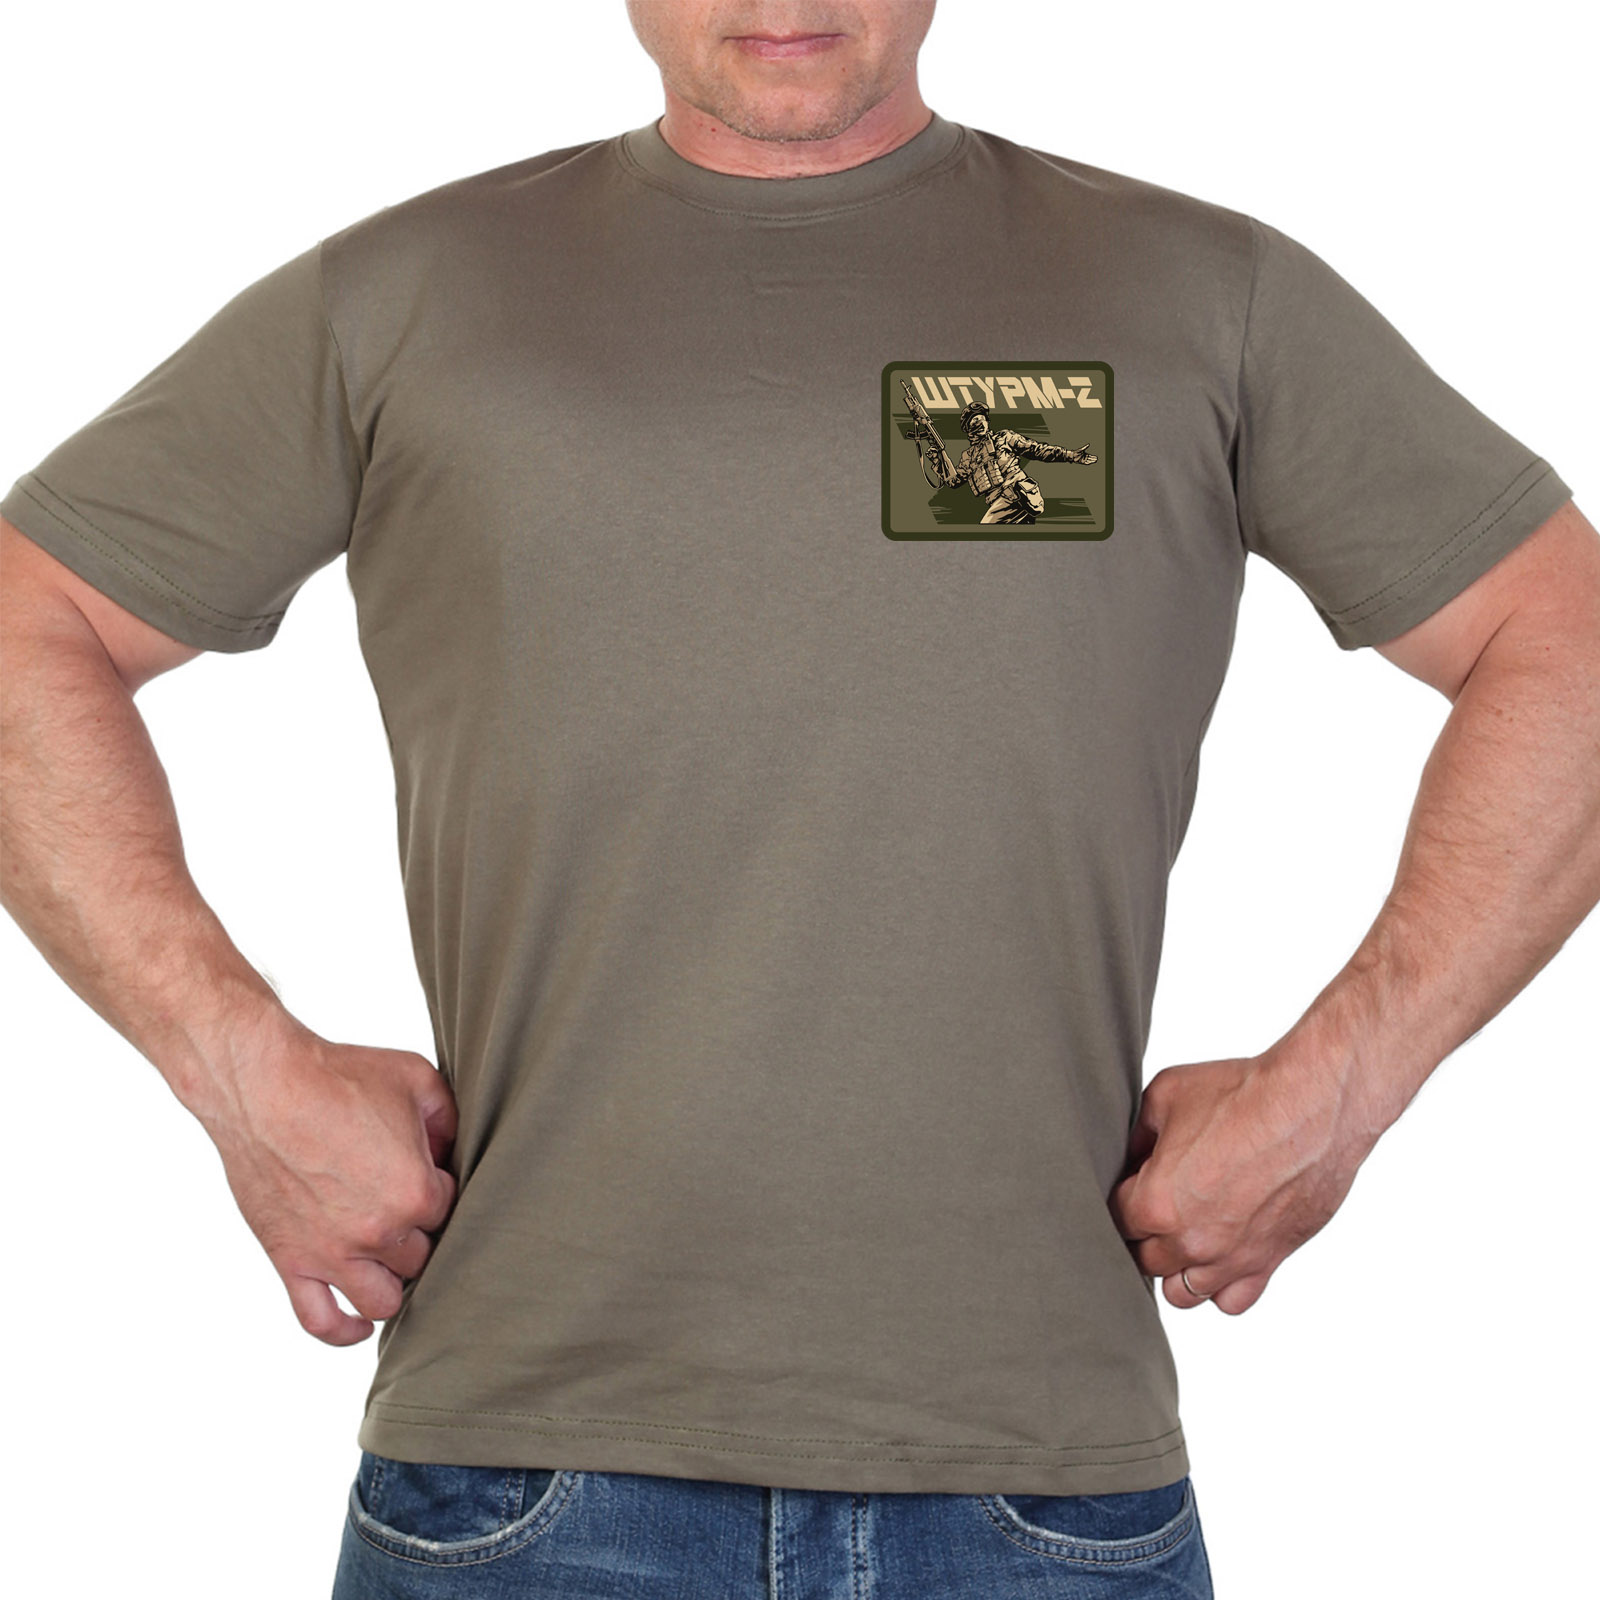 купить оливковую мужскую футболку с термотрансфером "Штурм-Z"